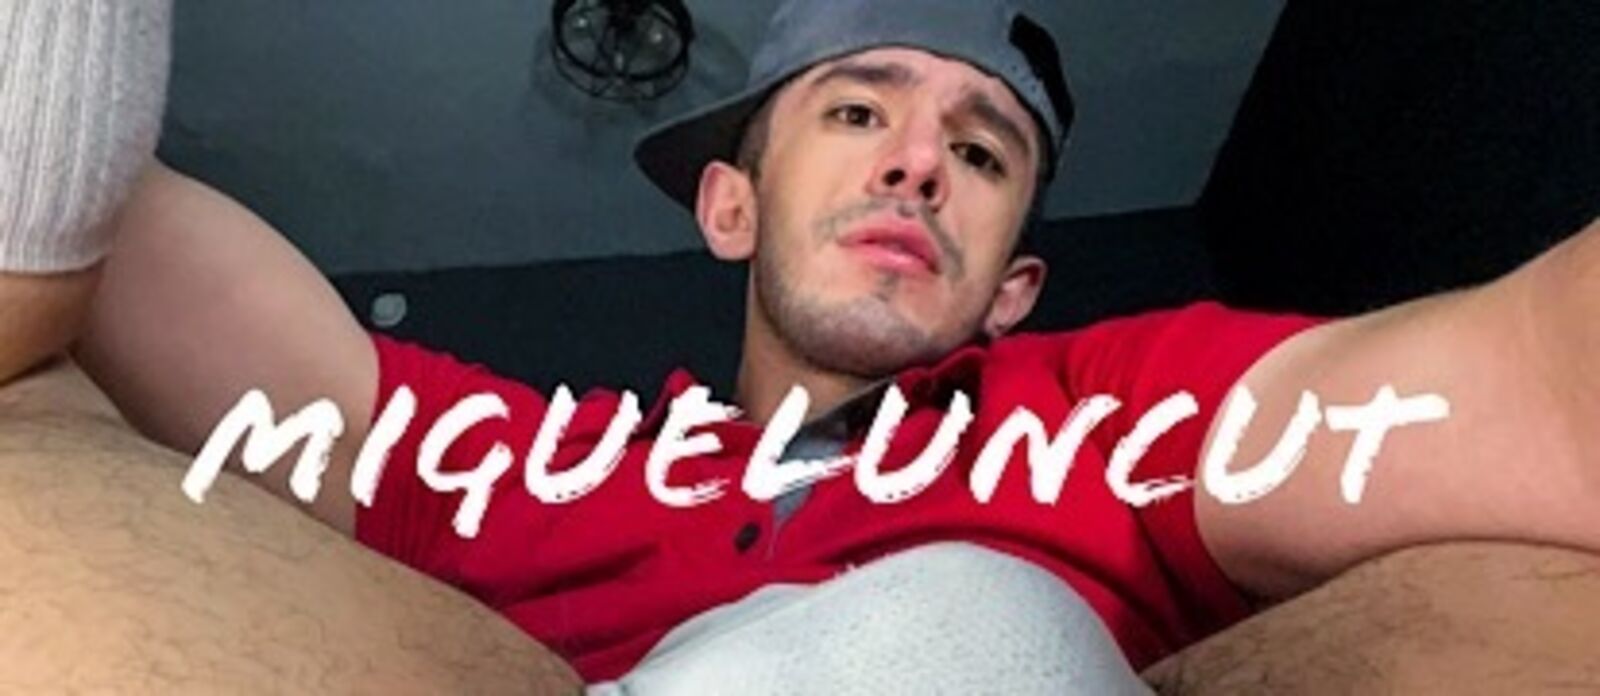 See MiguelUncut profile